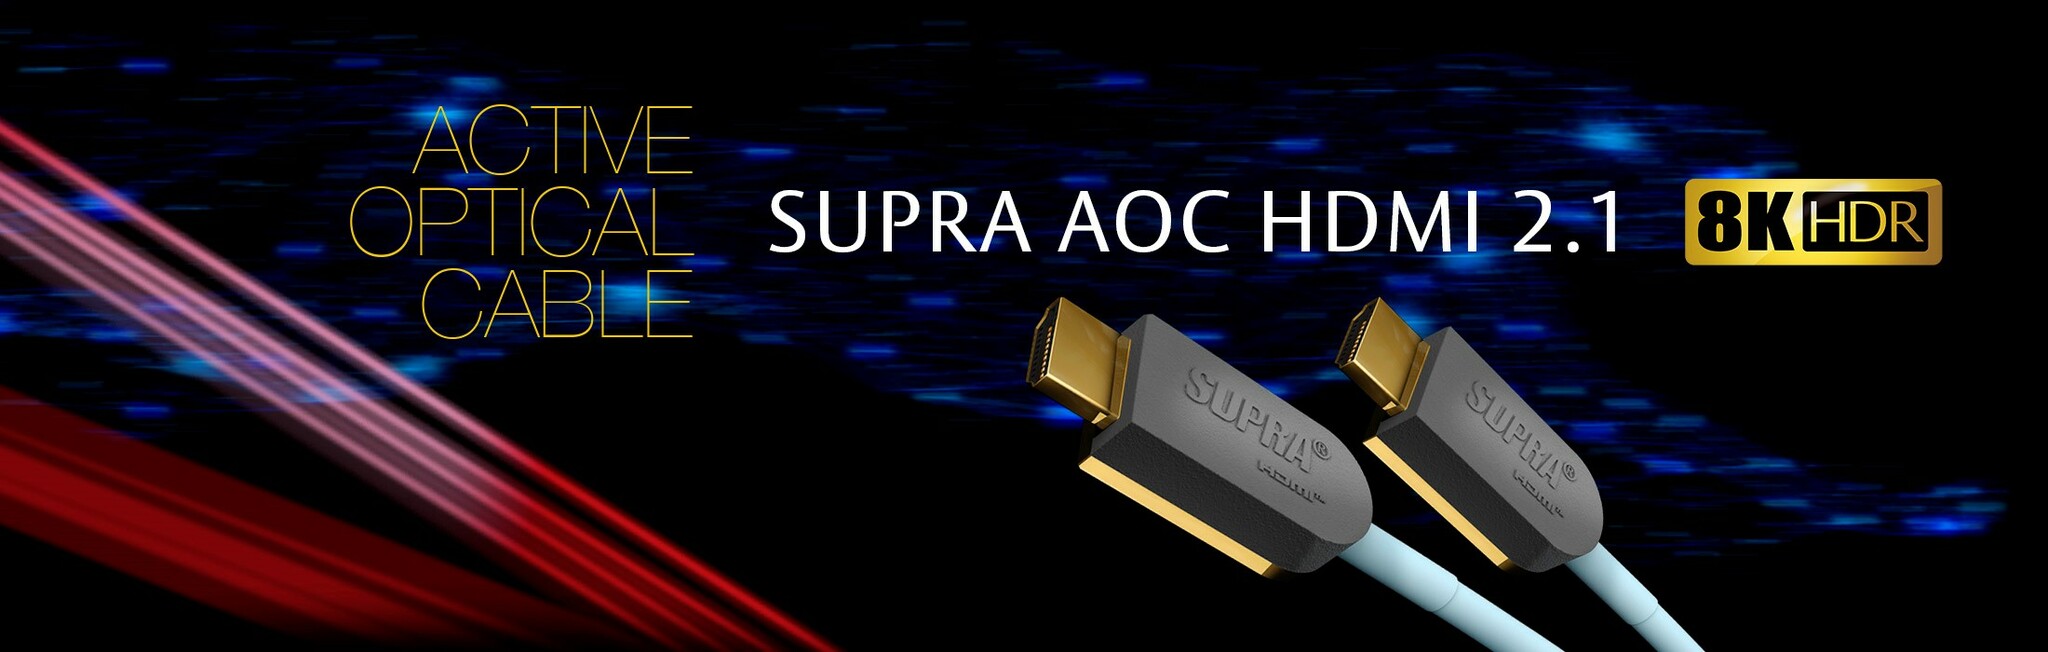 Supra HDMI AOC Optical